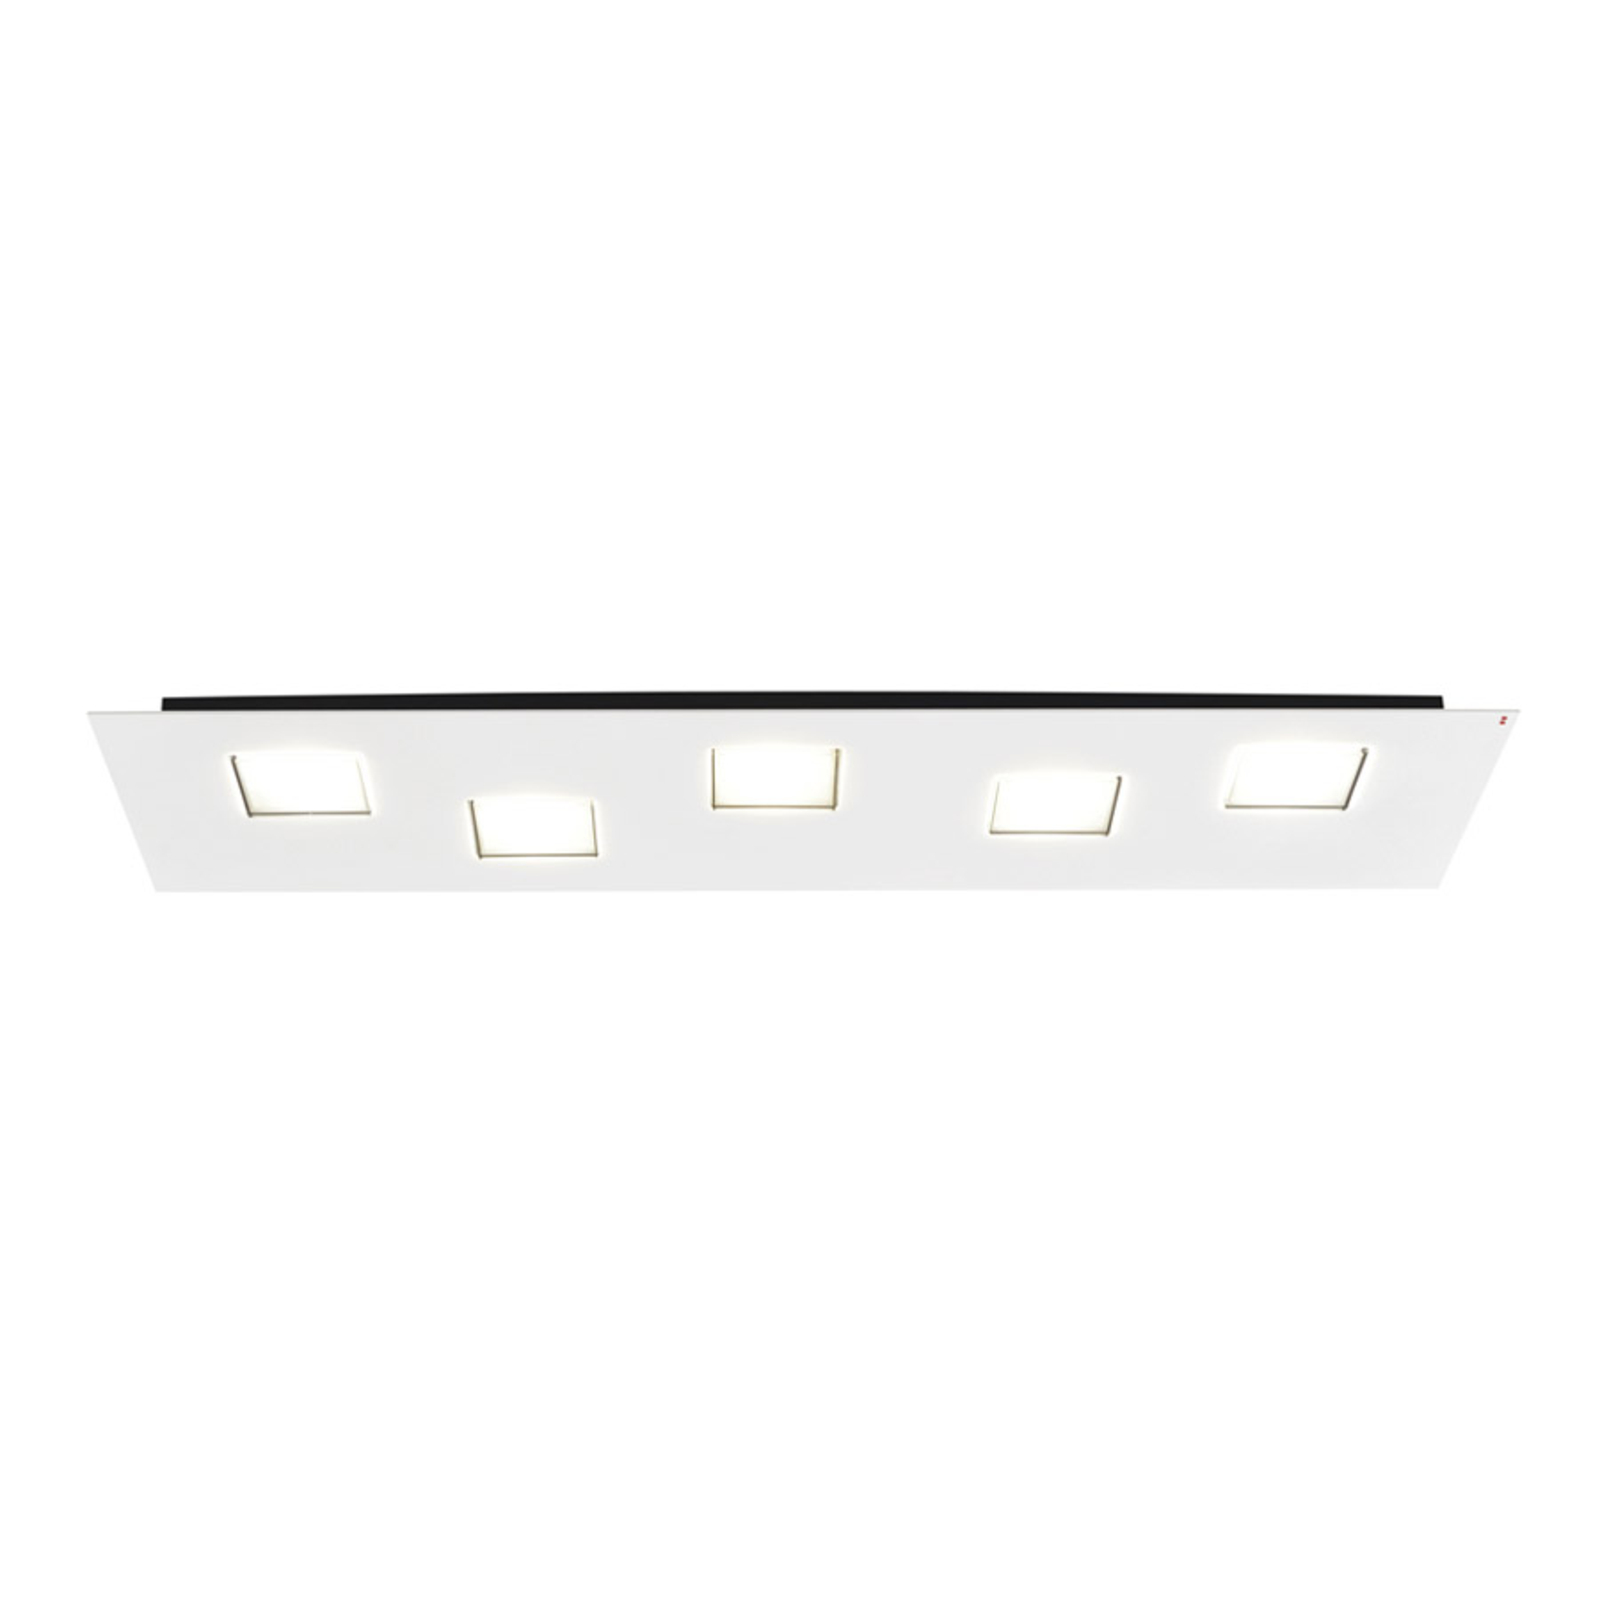 Langwerpige LED plafondlamp Quarter in wit